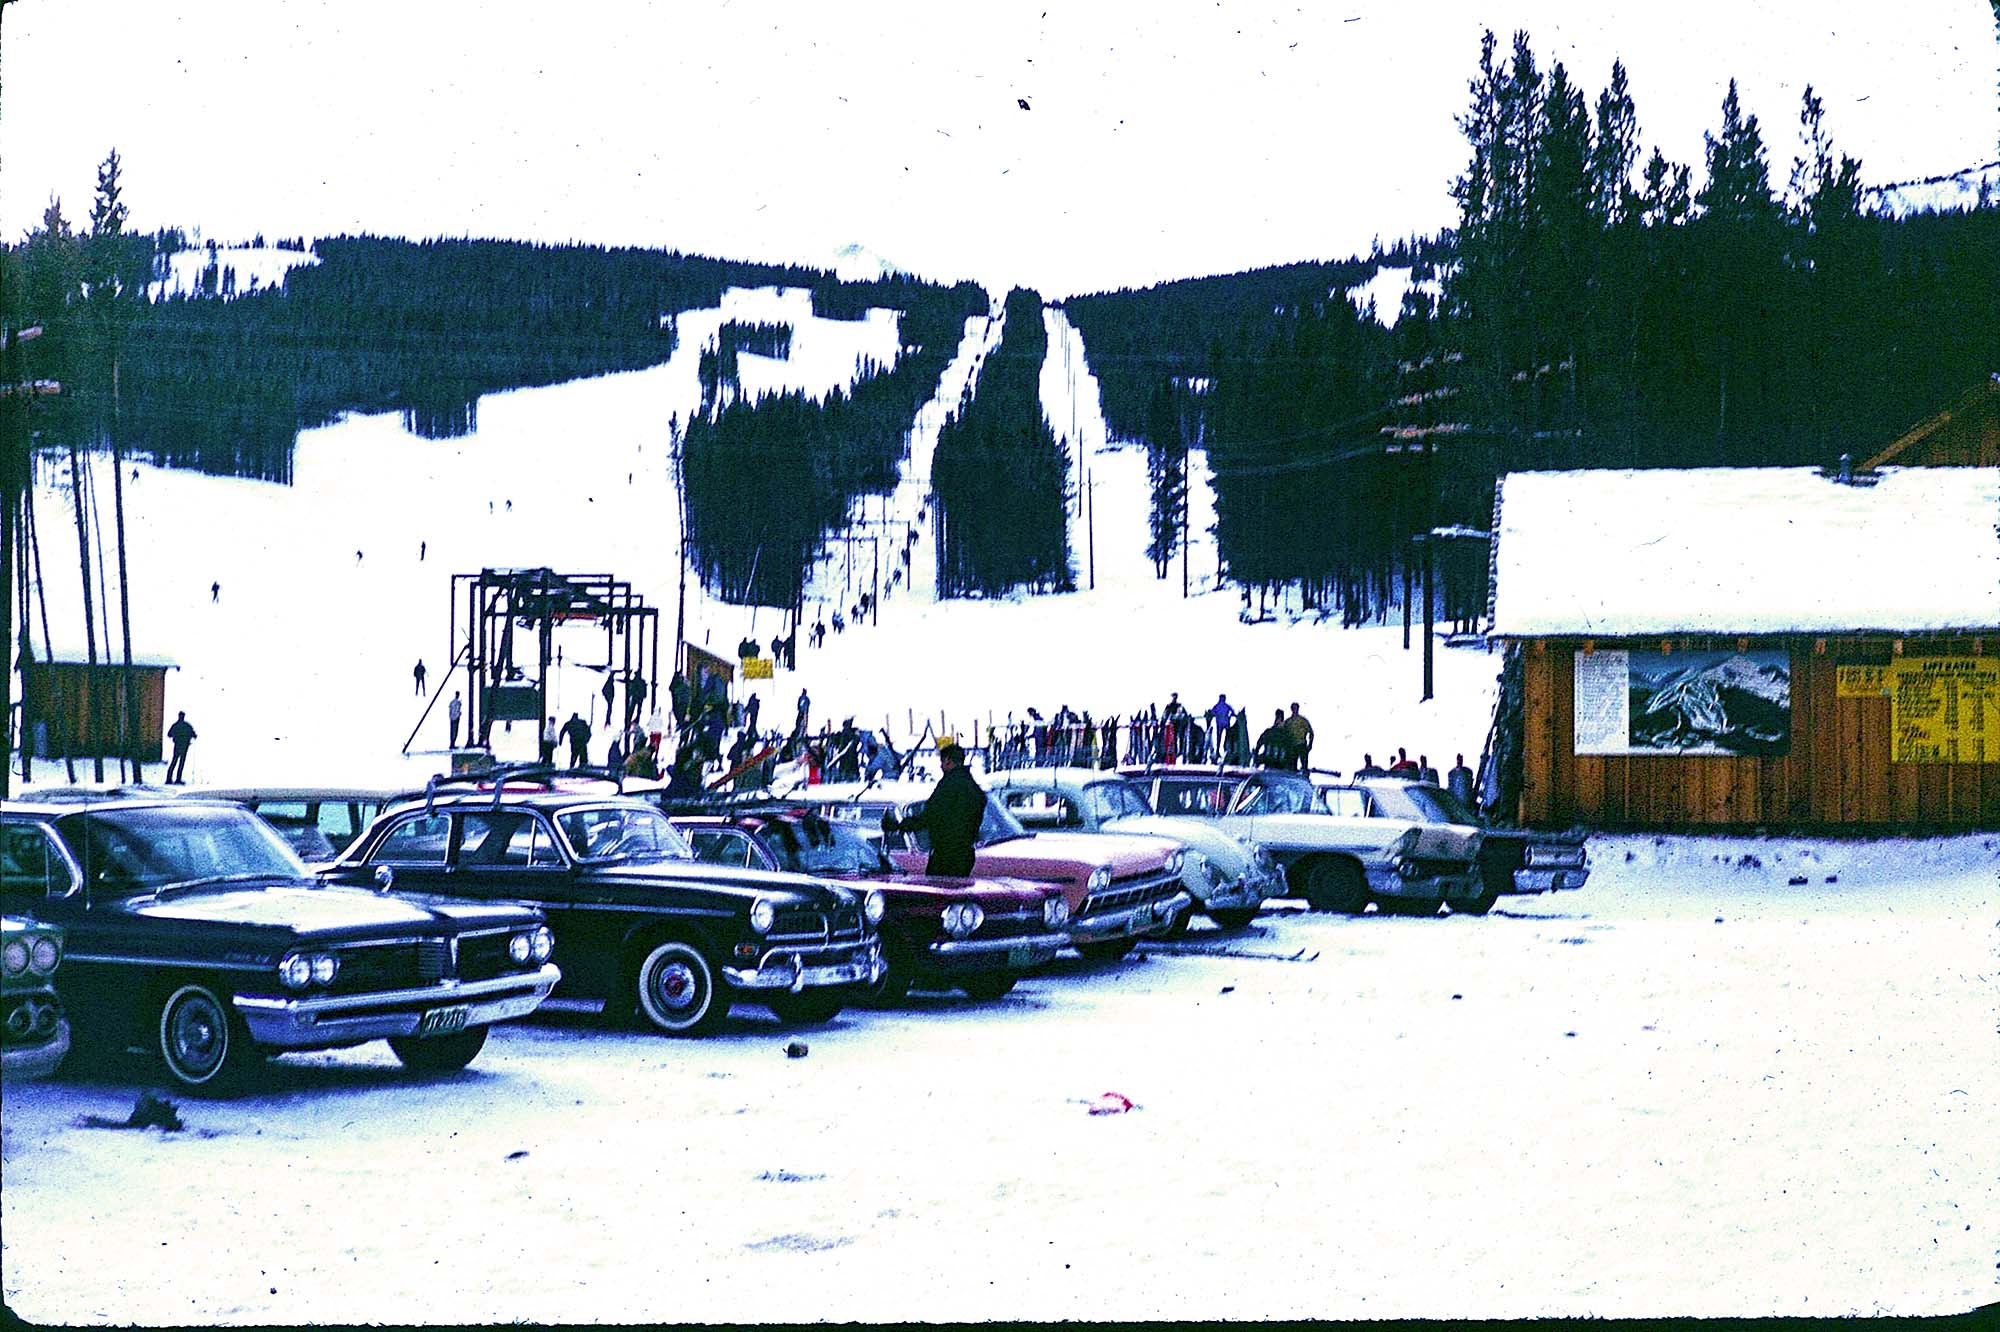 Parking lot at the base of Peak 8, Breckenridge Ski Area, Breckenridge (Colo.)--1963